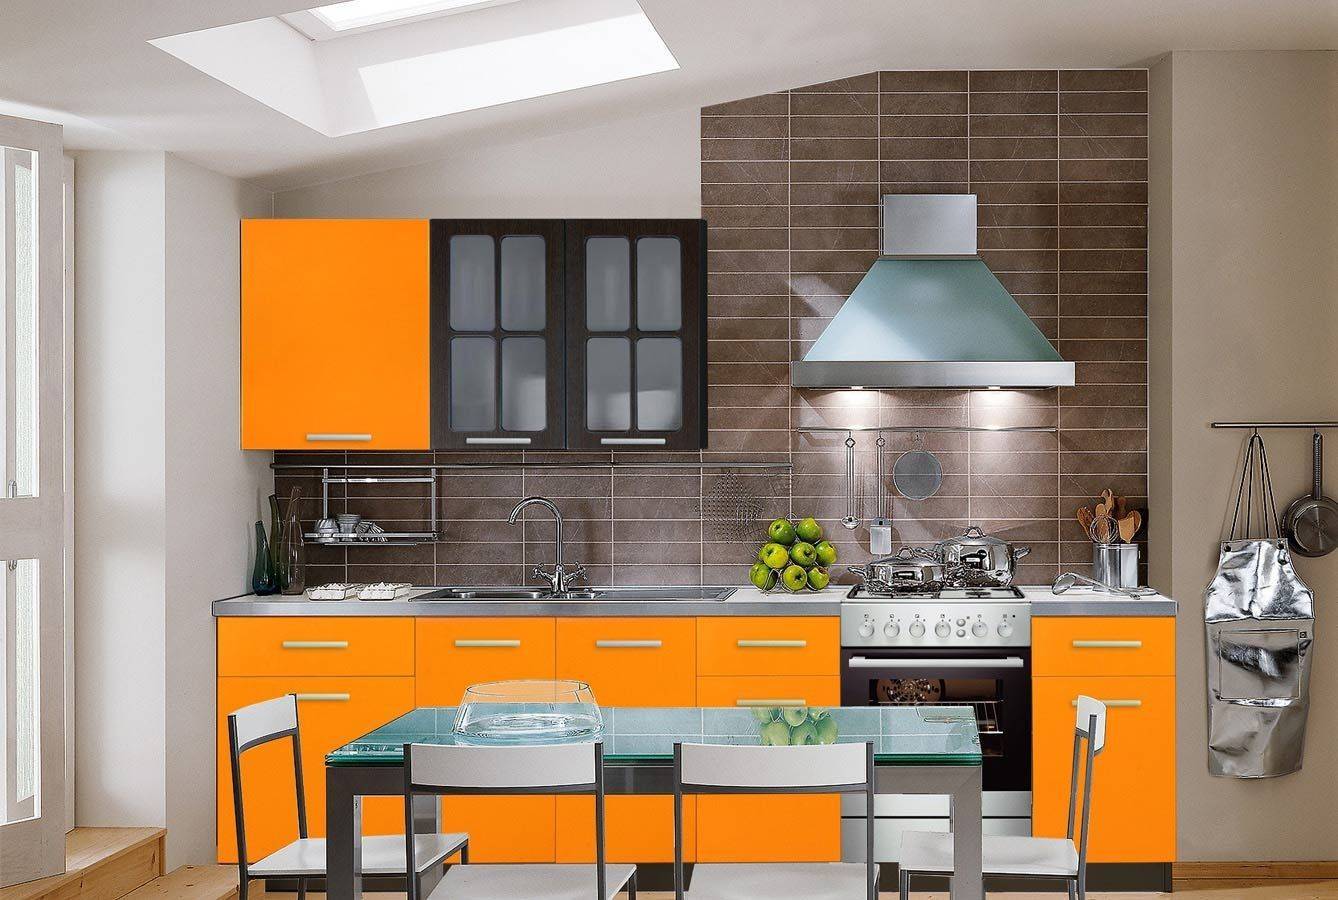 Оранжевая кухня в интерьере (58 фото): стены в желто-, черно-, зелено-оранжевом цвете, какие шторы подойдут, видео